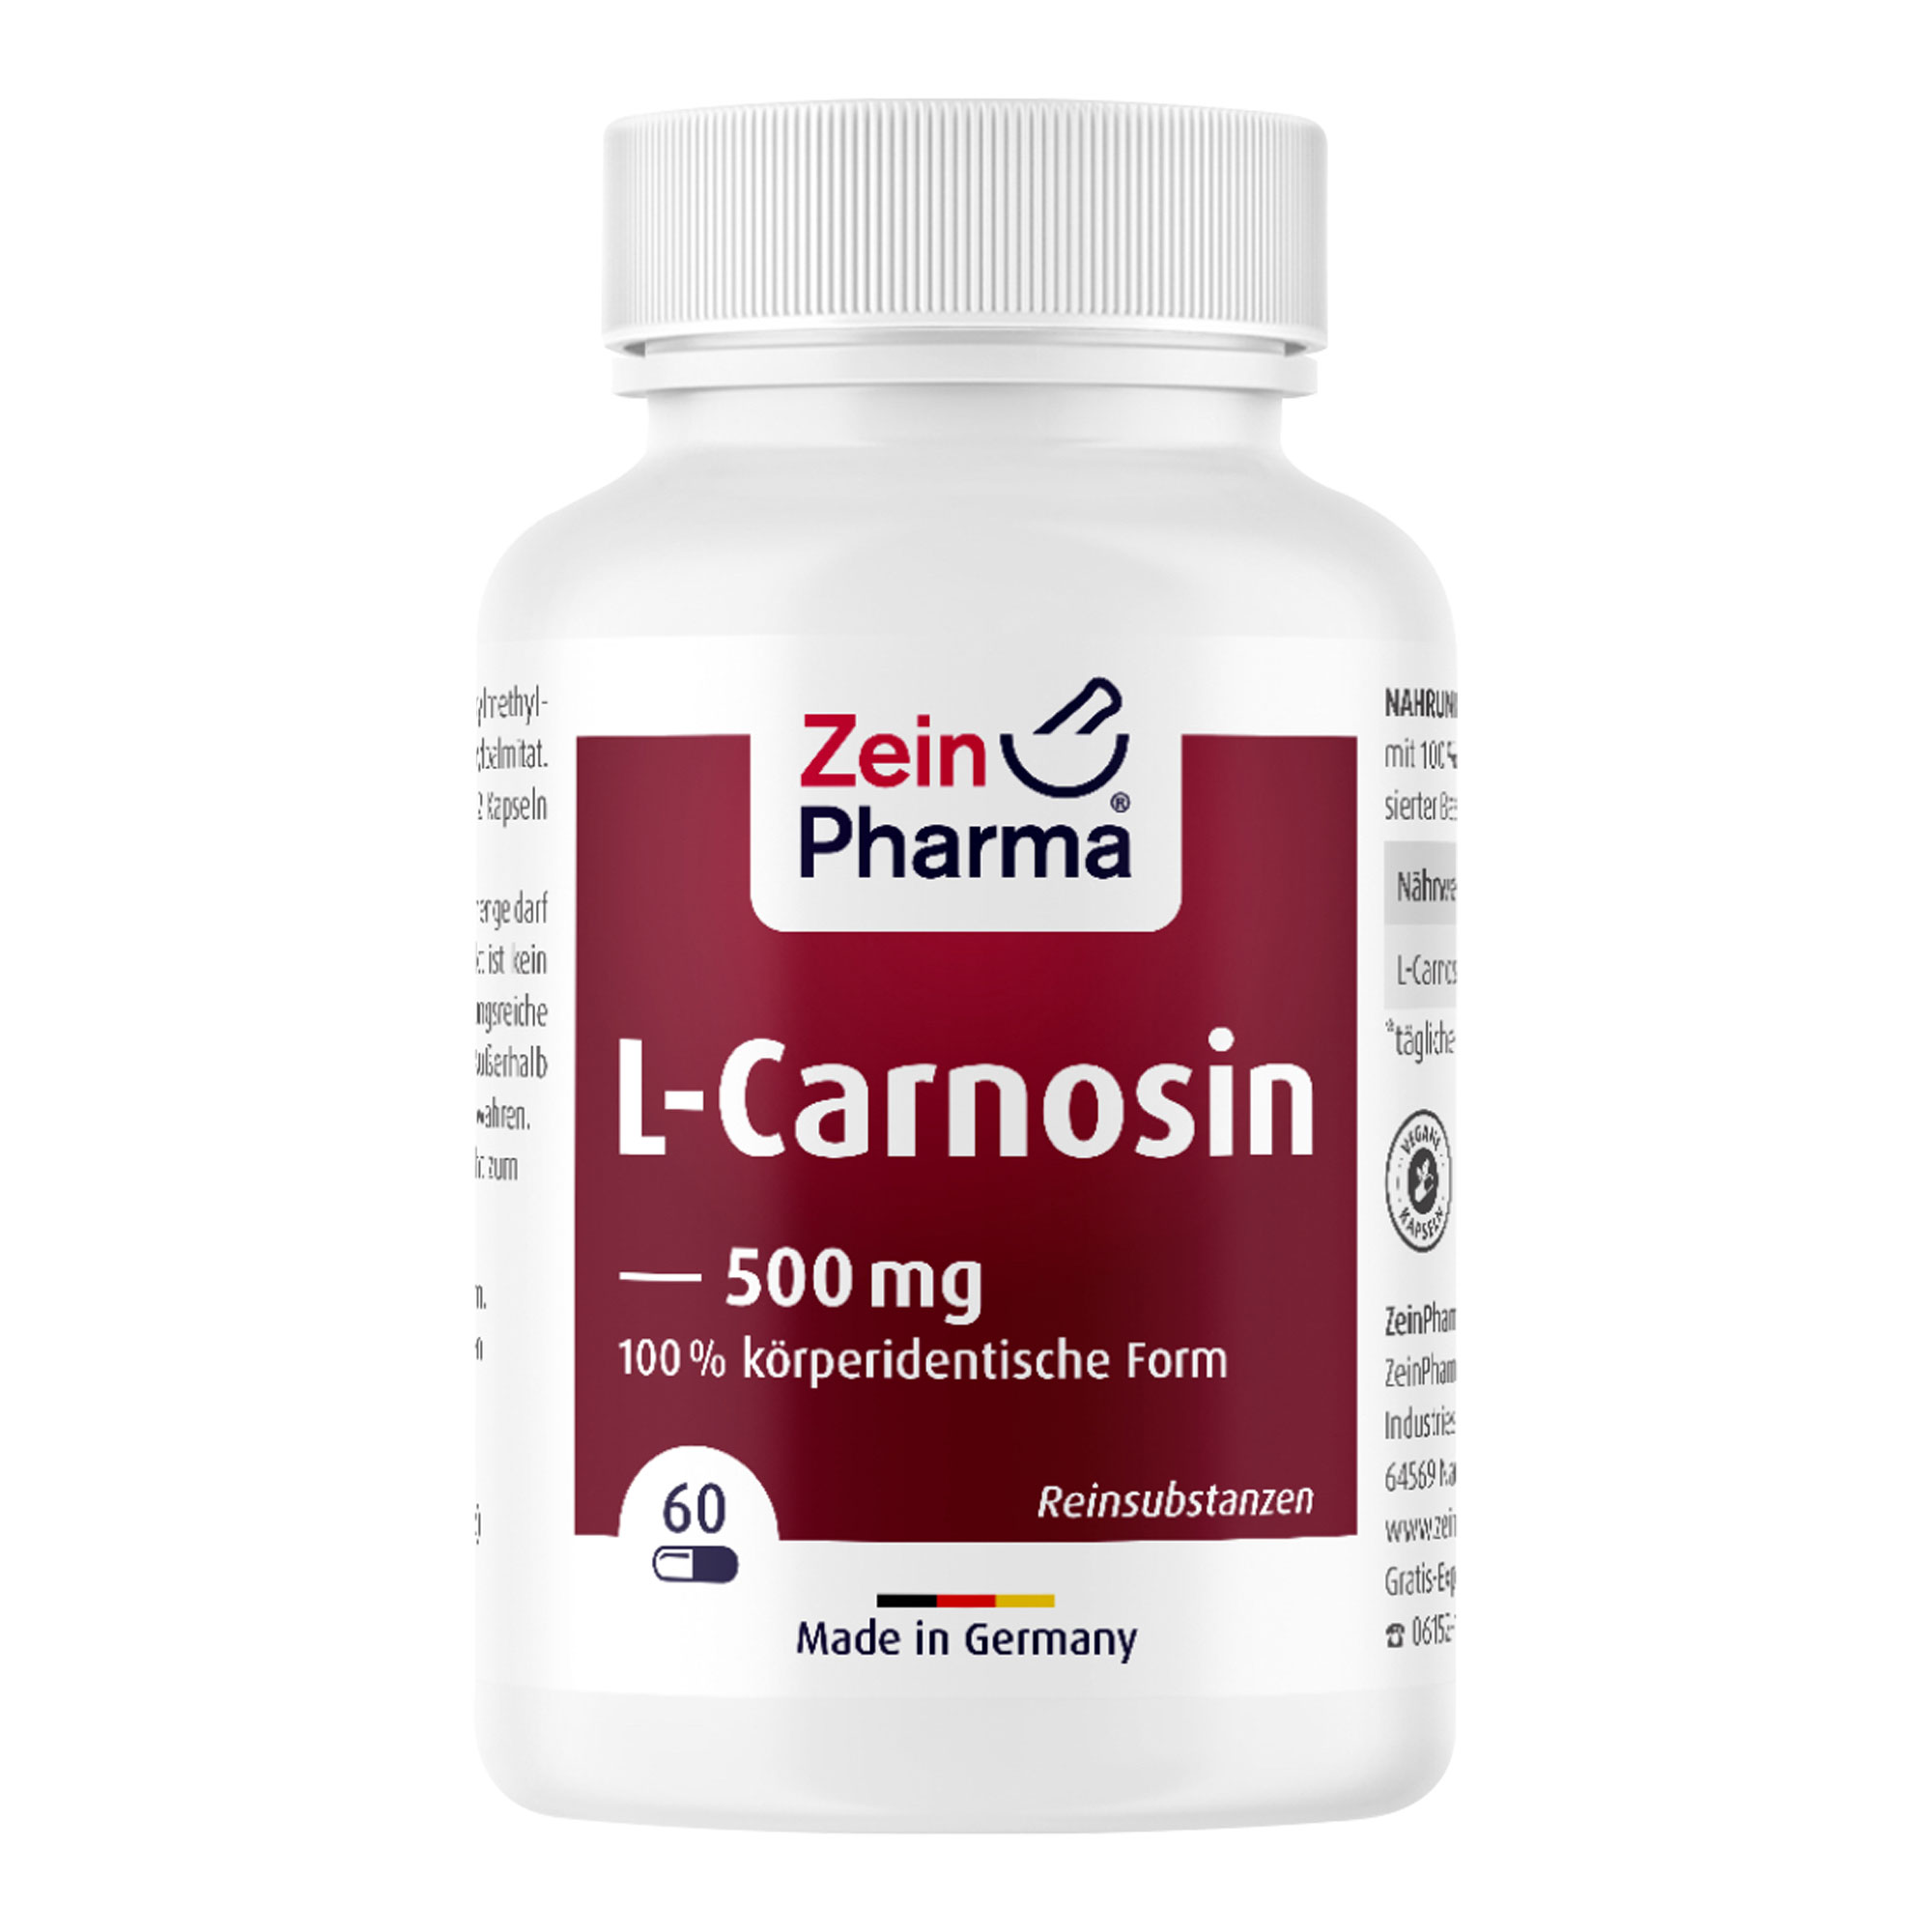 Nahrungsergänzungsmitel mit 100 % reinem L-Carnosin, in hochdosierter Basen-Form und veganen Kapseln.